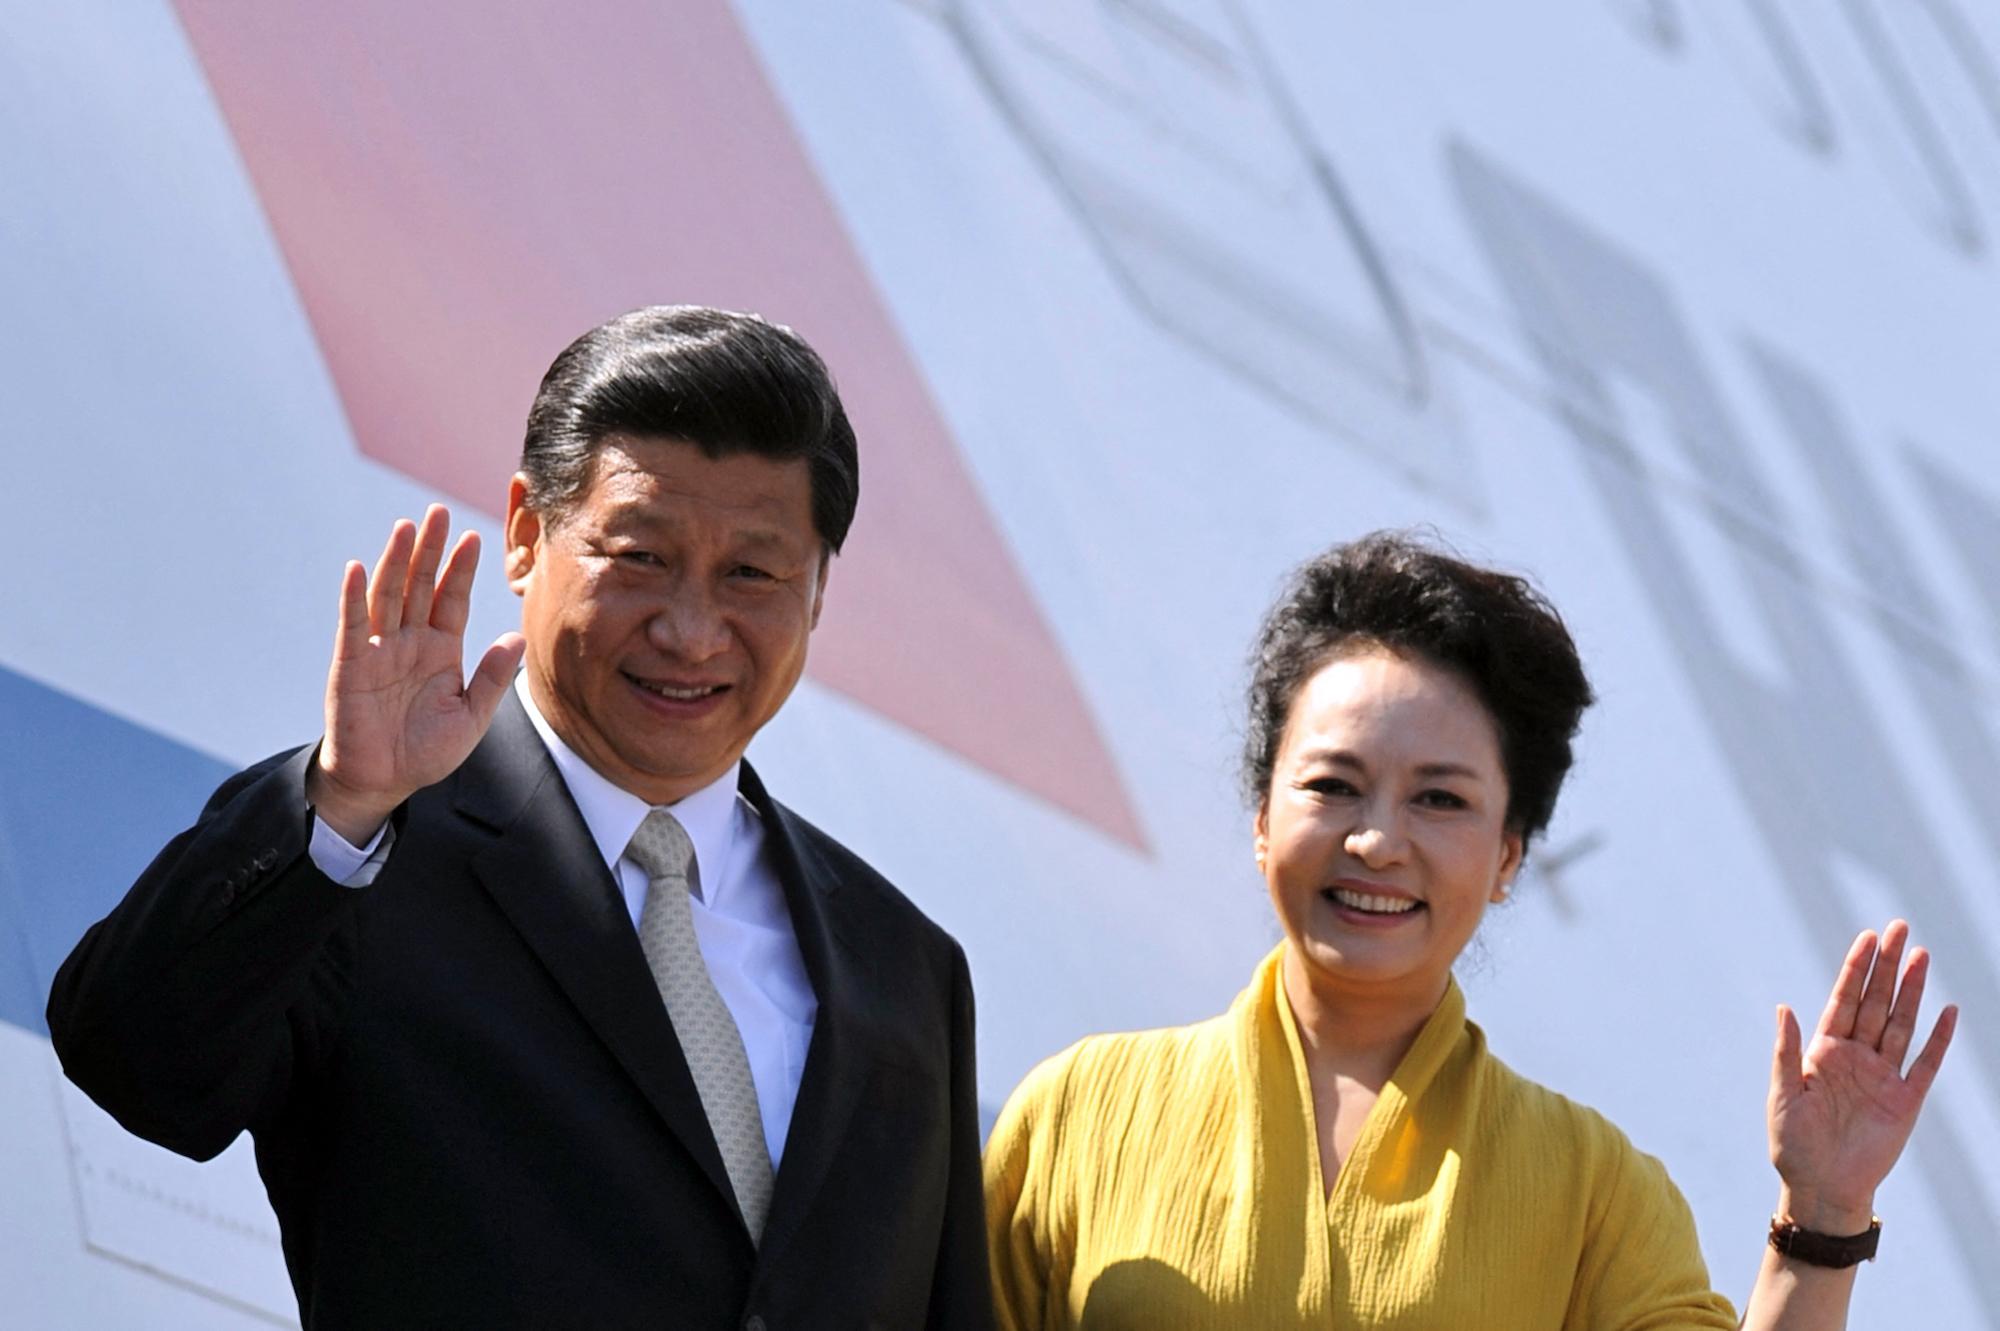 Presidente de China Xi Jinping y su esposa Peng Liyuan se despiden antes de tomar su vuelo hacia México en el aeropuerto internacional de Costa Rica en junio 2013. Para entonces, Costa Rica era el único país que tenía relaciones diplomáticas con Beijing. Foto: Héctor Retamal / AFP.